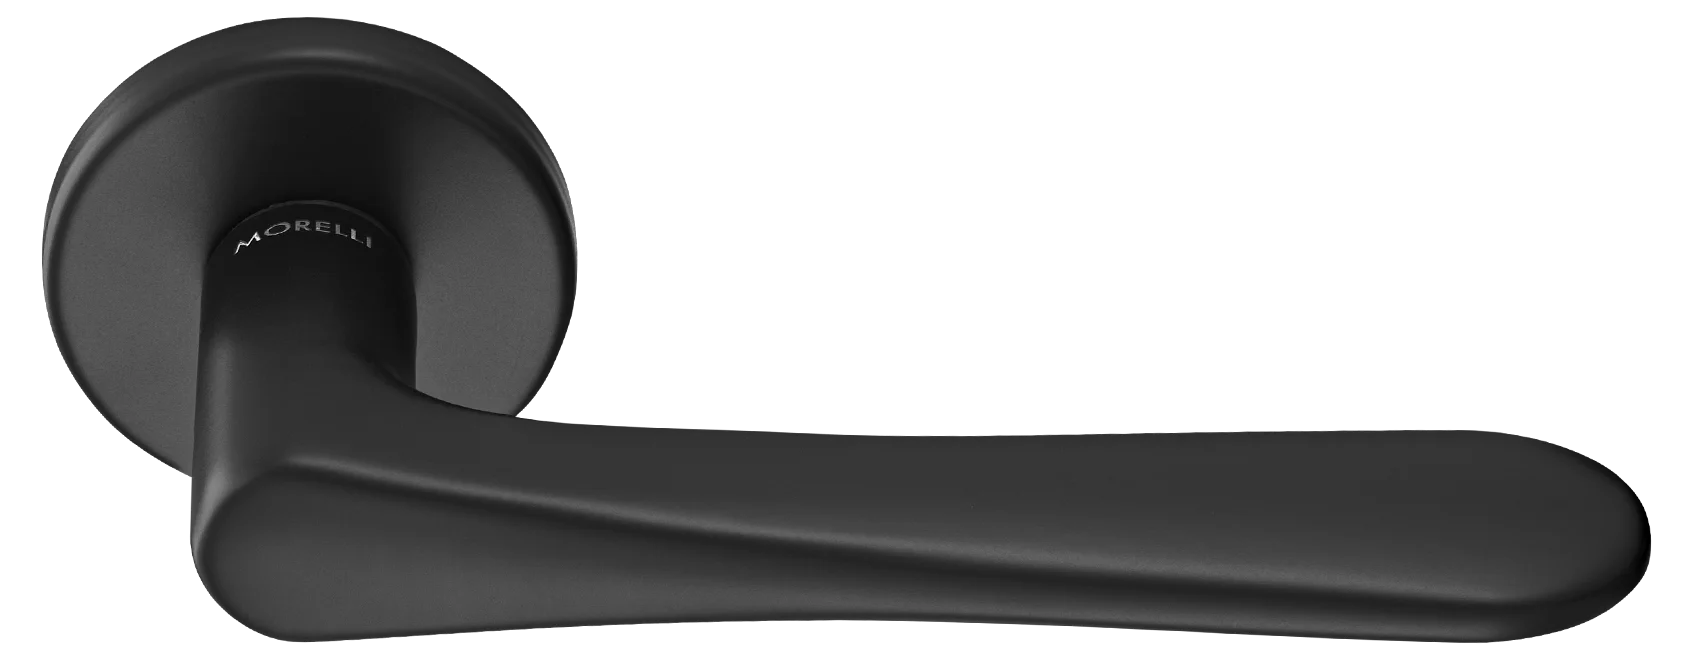 AULA R5 NERO, ручка дверная на розетке 7мм, цвет -  черный фото купить Ижевск